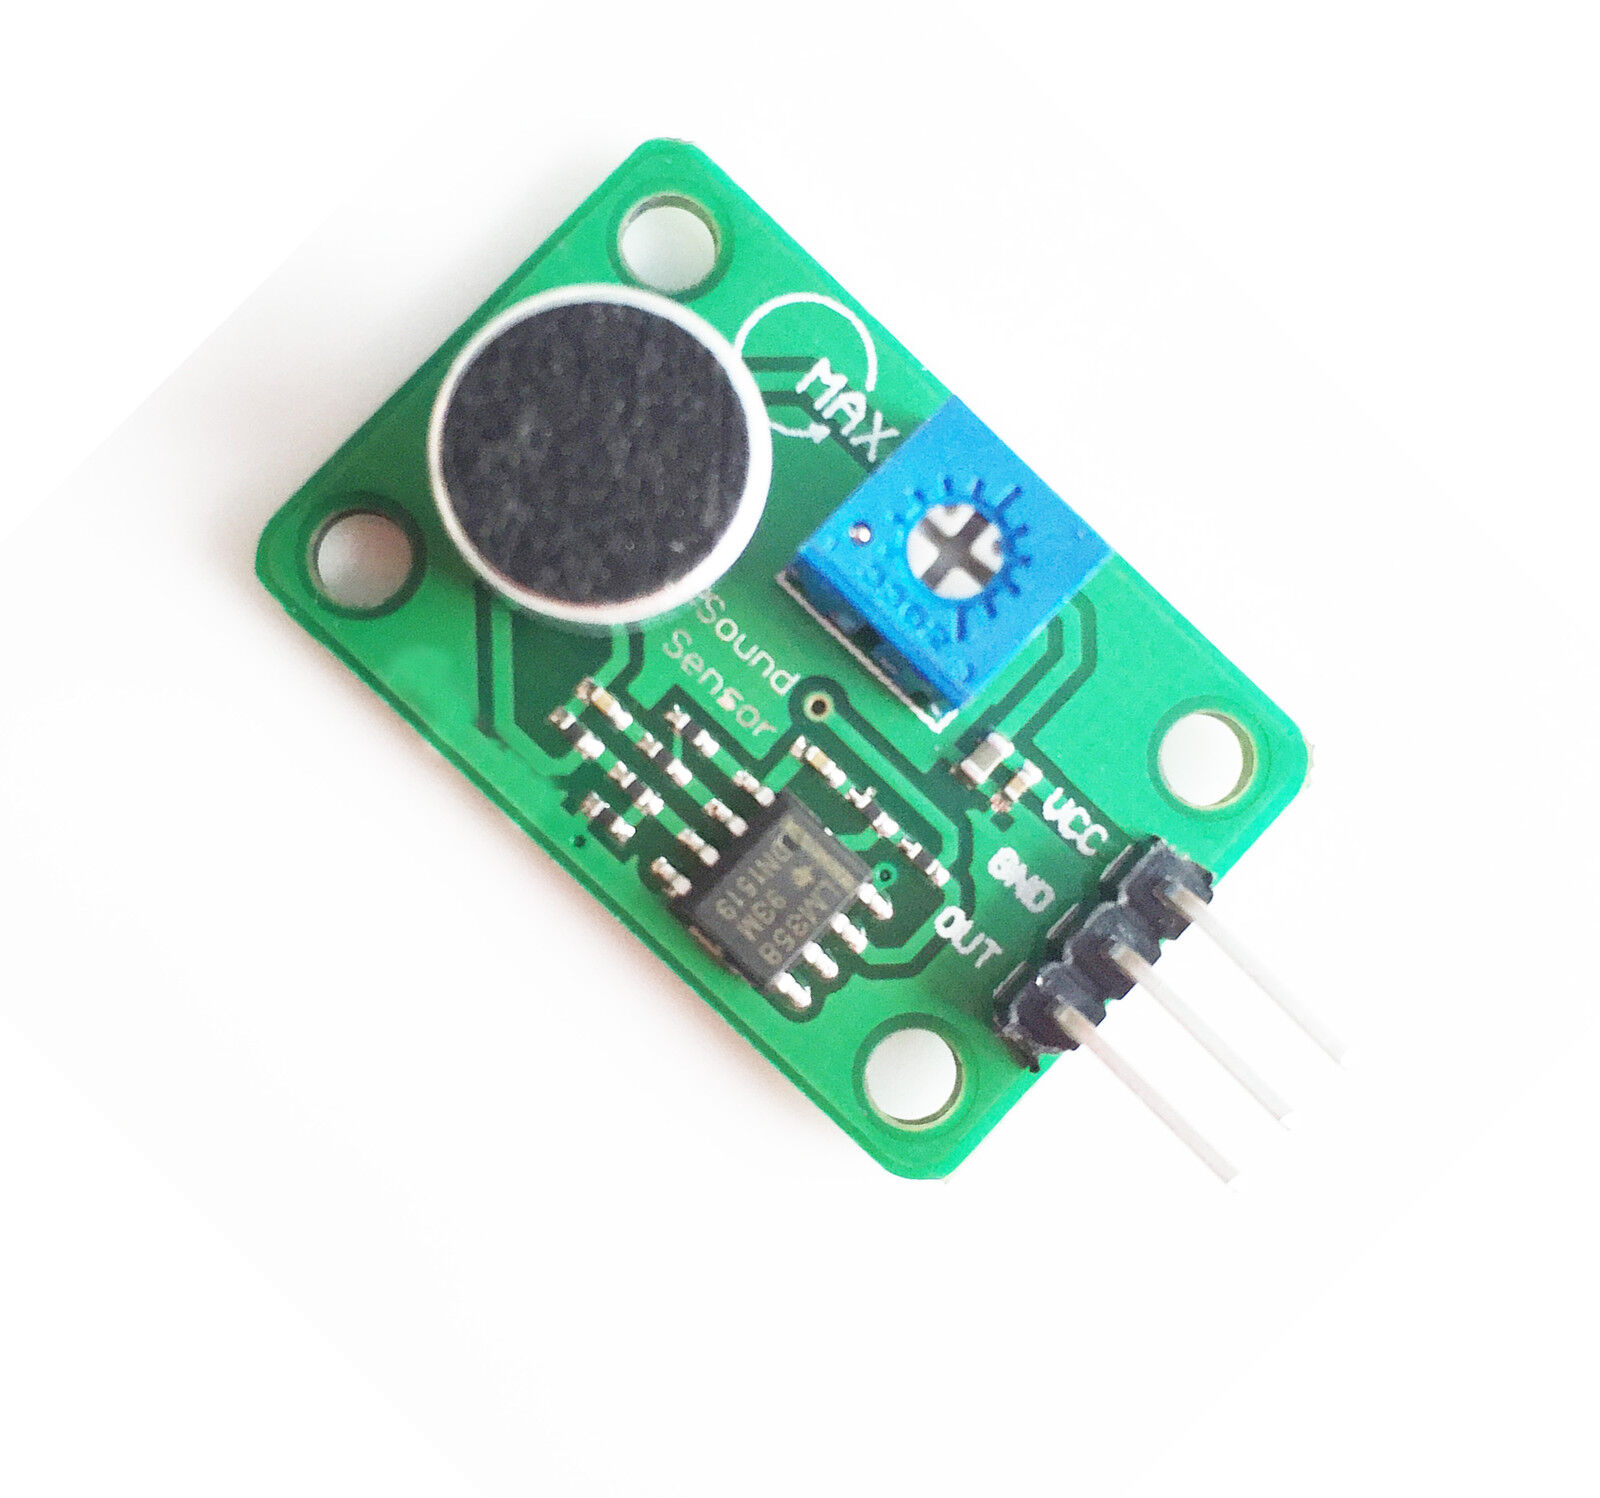 2pcs Voice Sound Detection Sensor Module for Arduino DIY Smart Vehicle Robot